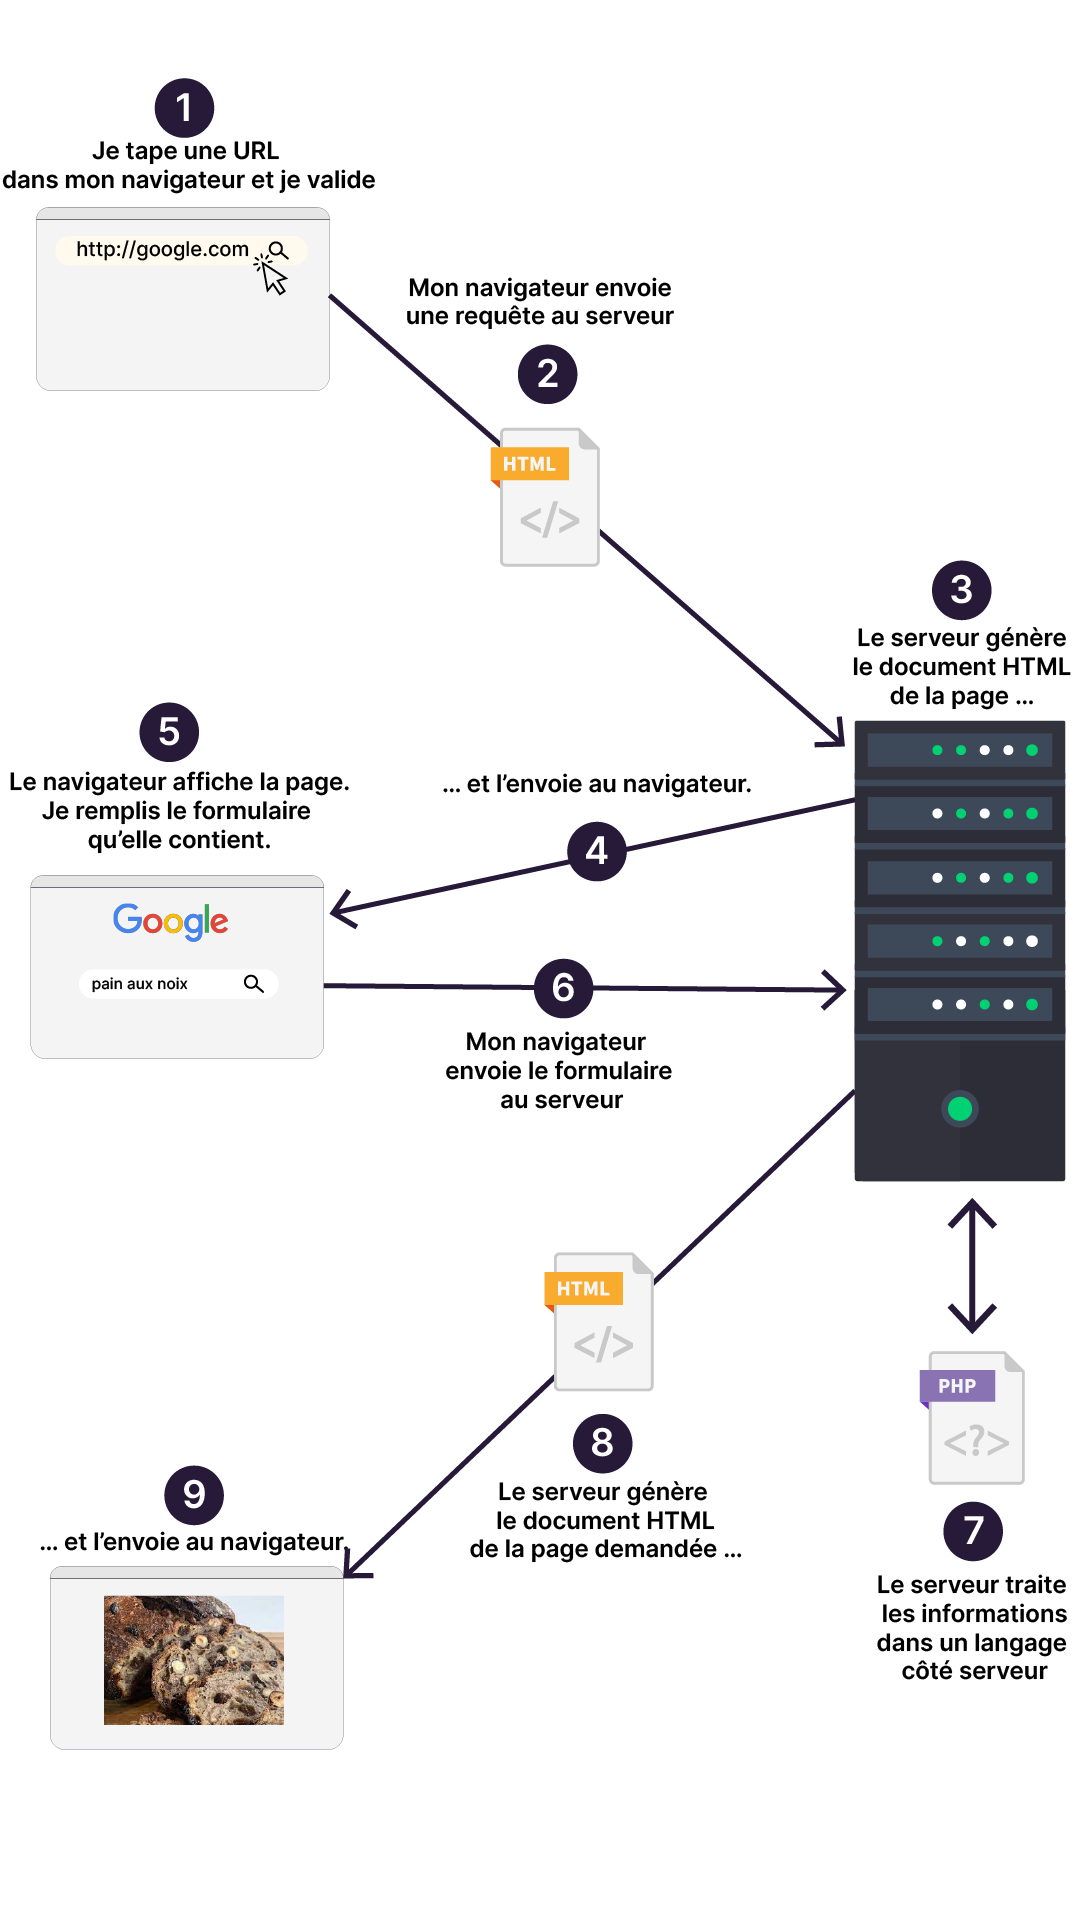 Illustration du fonctionnement d’un serveur HTTP en 7 étapes : depuis l'URL rentré par l'utilisateur dans le navigateur jusqu'au traitement des informations par le serveur.